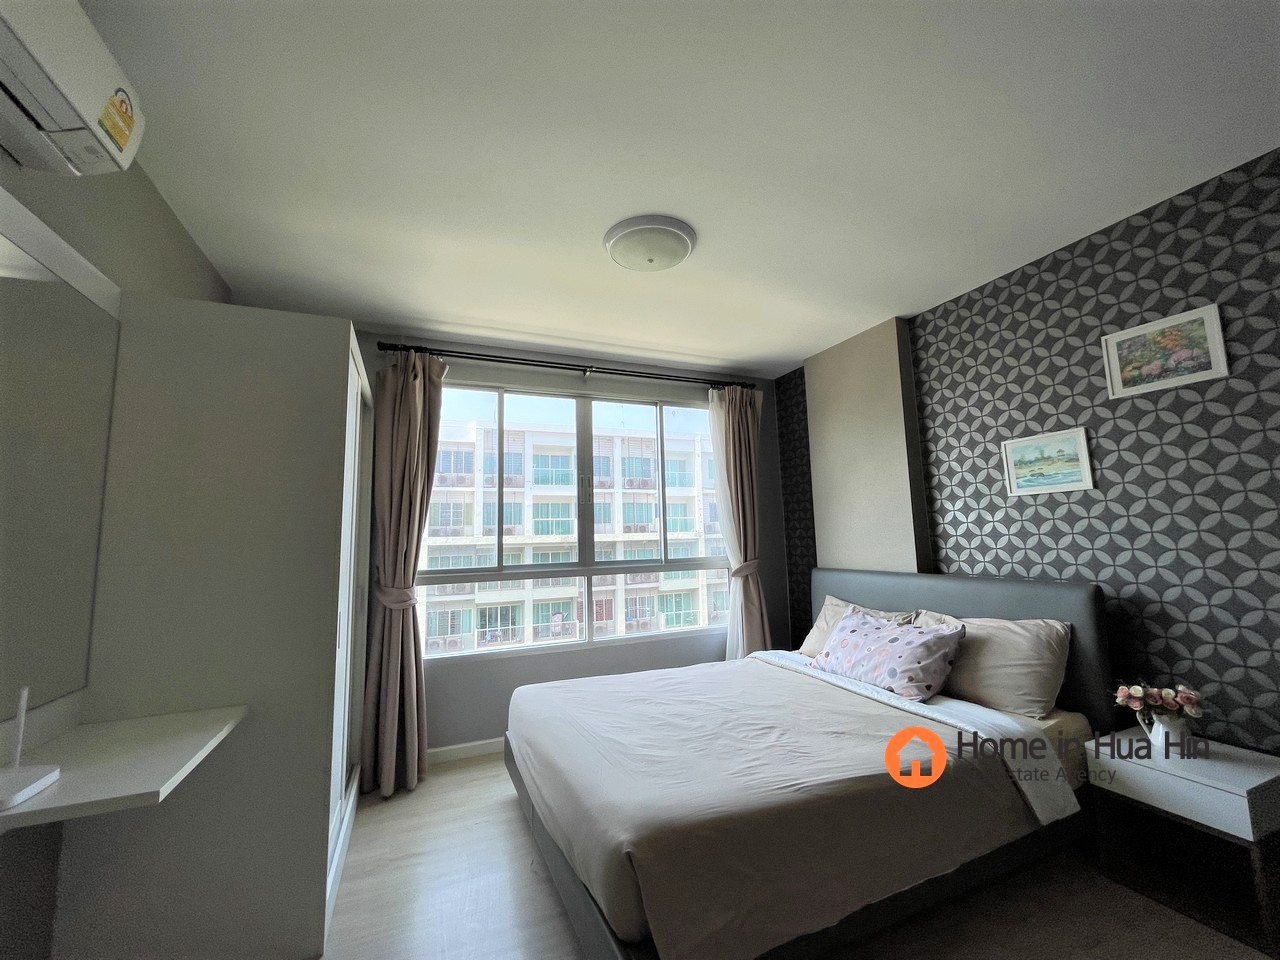 A room Hua Hin for rent  close to the beach  ðŸ˜‰ðŸ˜‰ðŸ˜‰